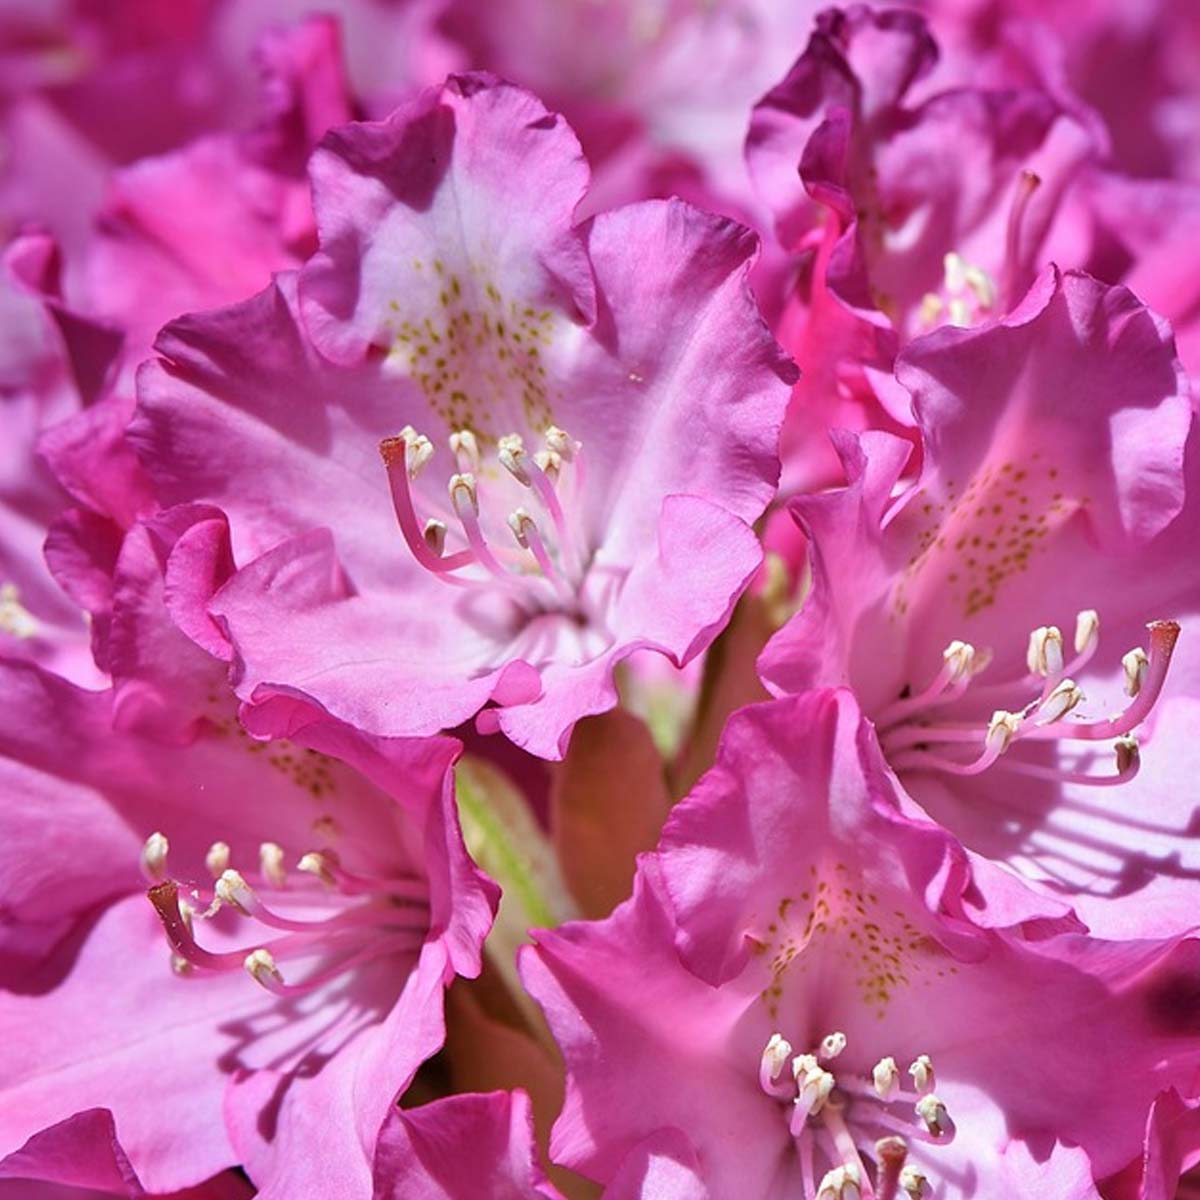 Jardines ingleses: Características, cuidados y tips para construirlo - Rododendro